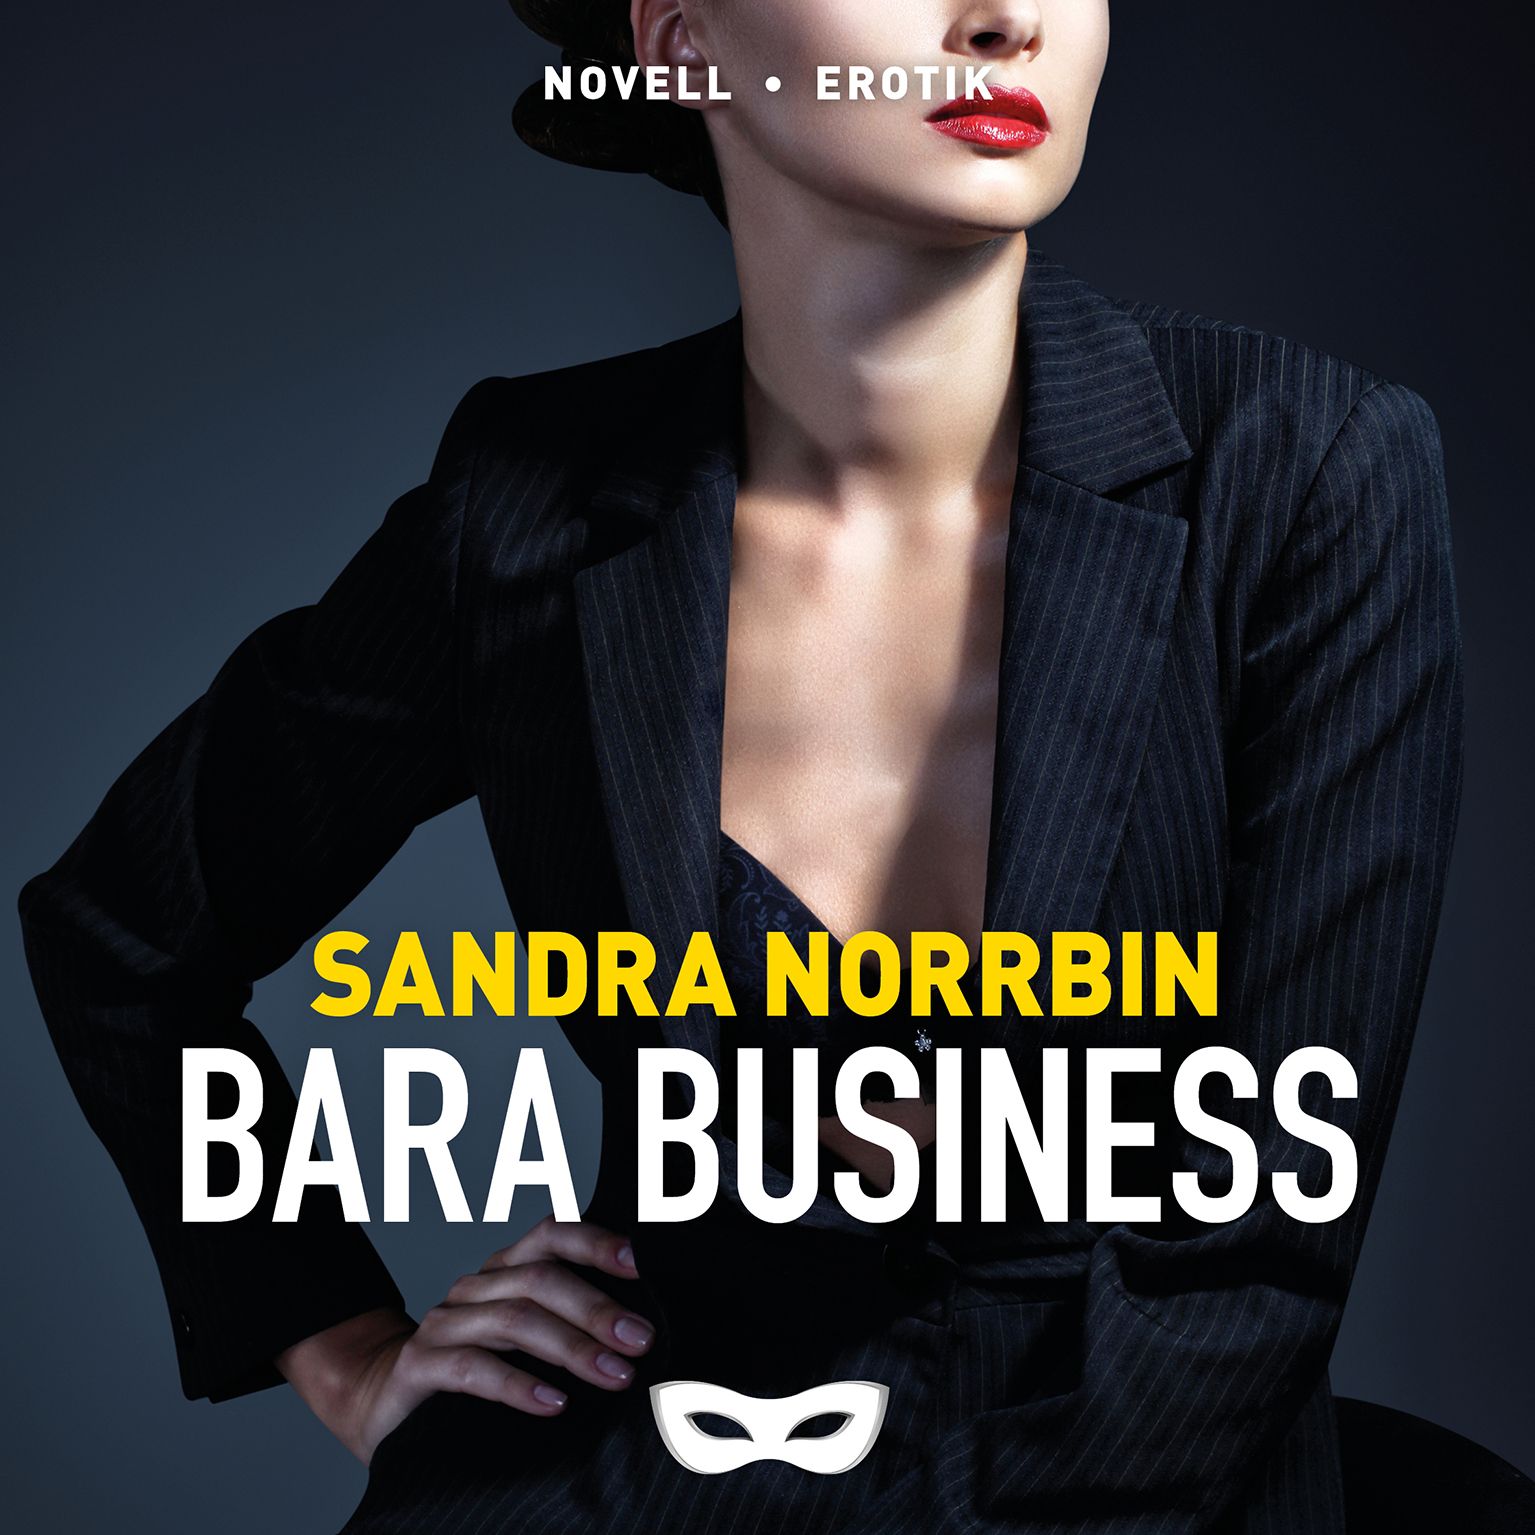 Bara business, ljudbok av Sandra Norrbin